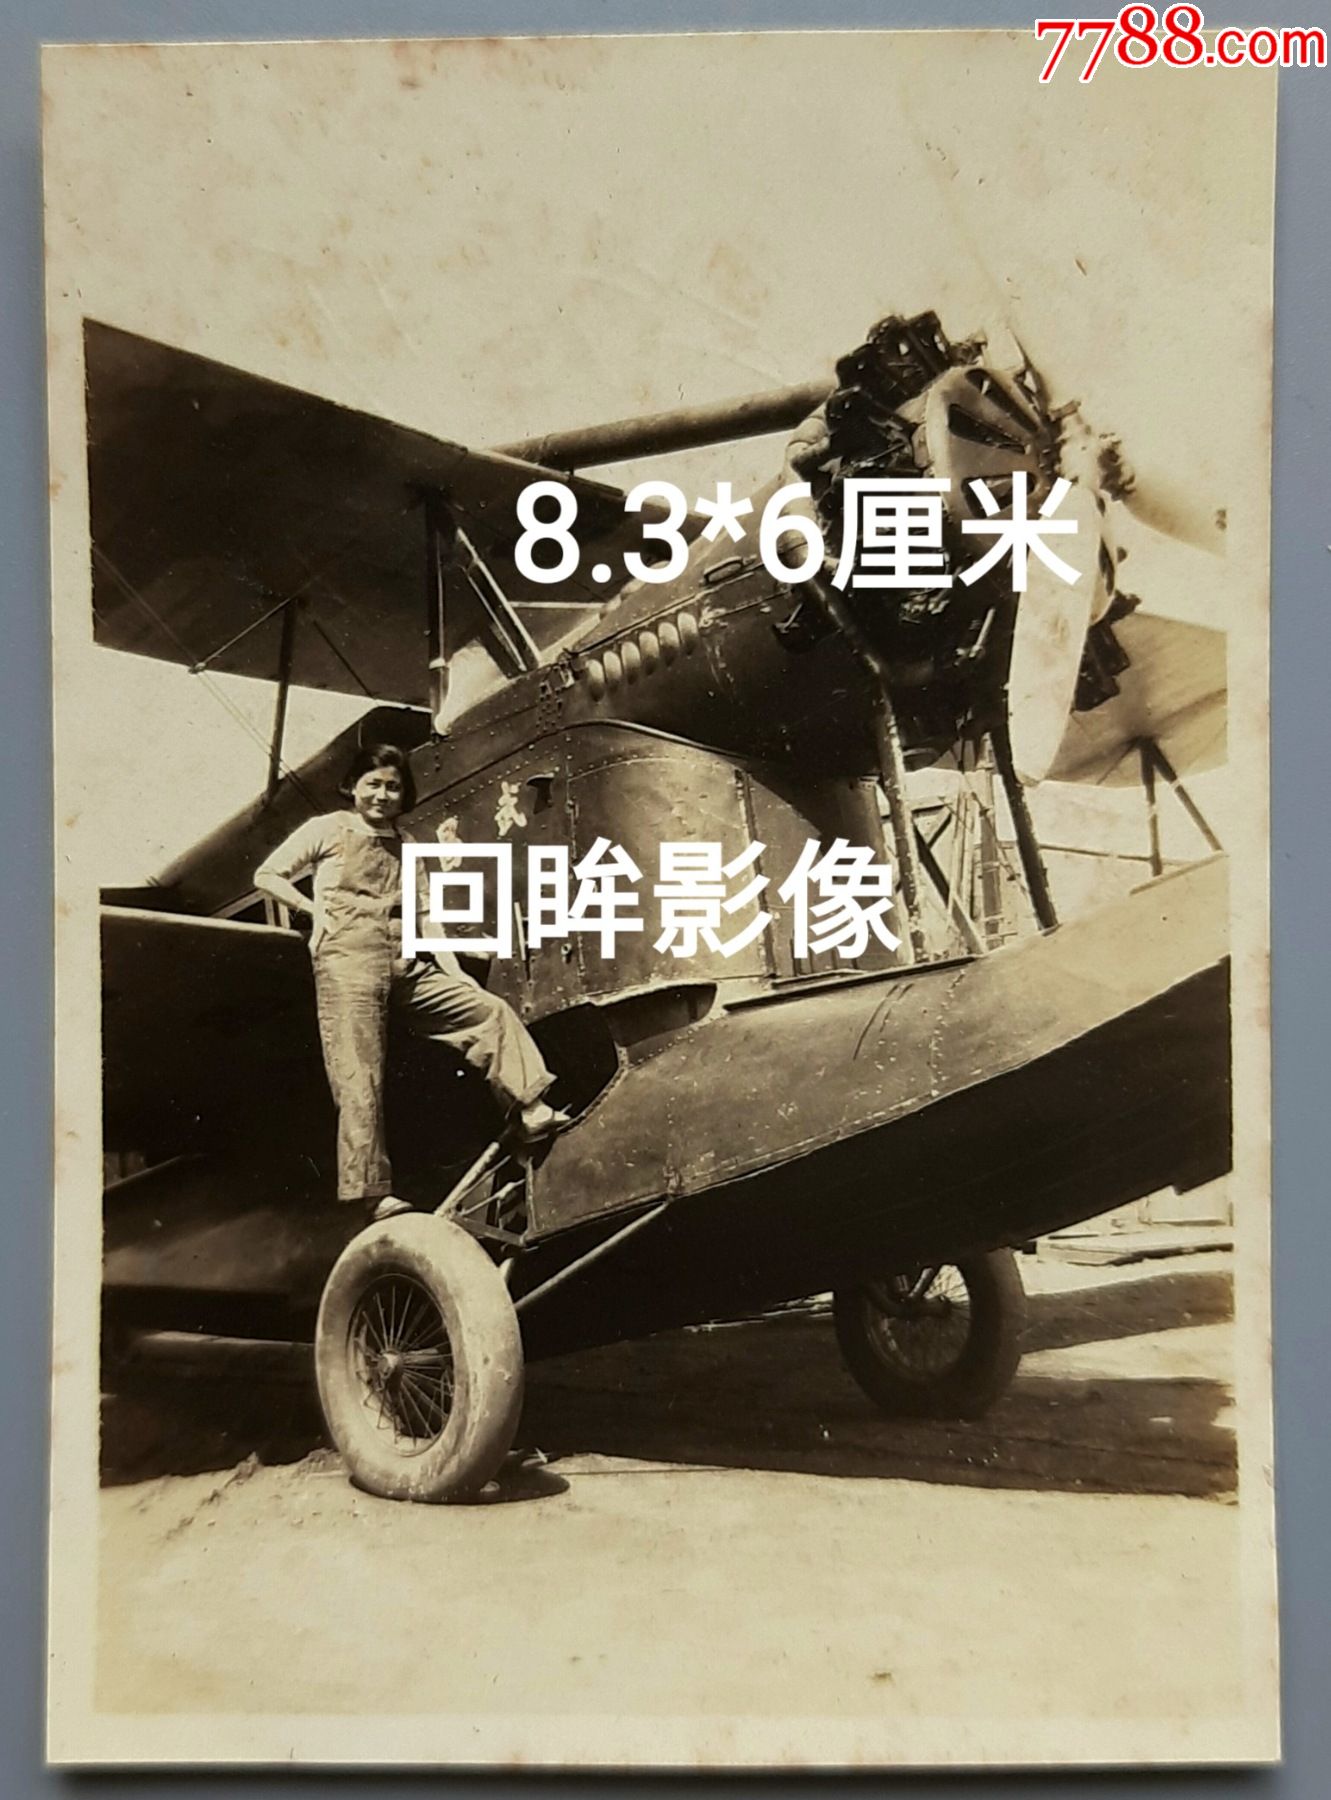 杨系列11933年武昌号水陆两用邮政飞机在龙华机场